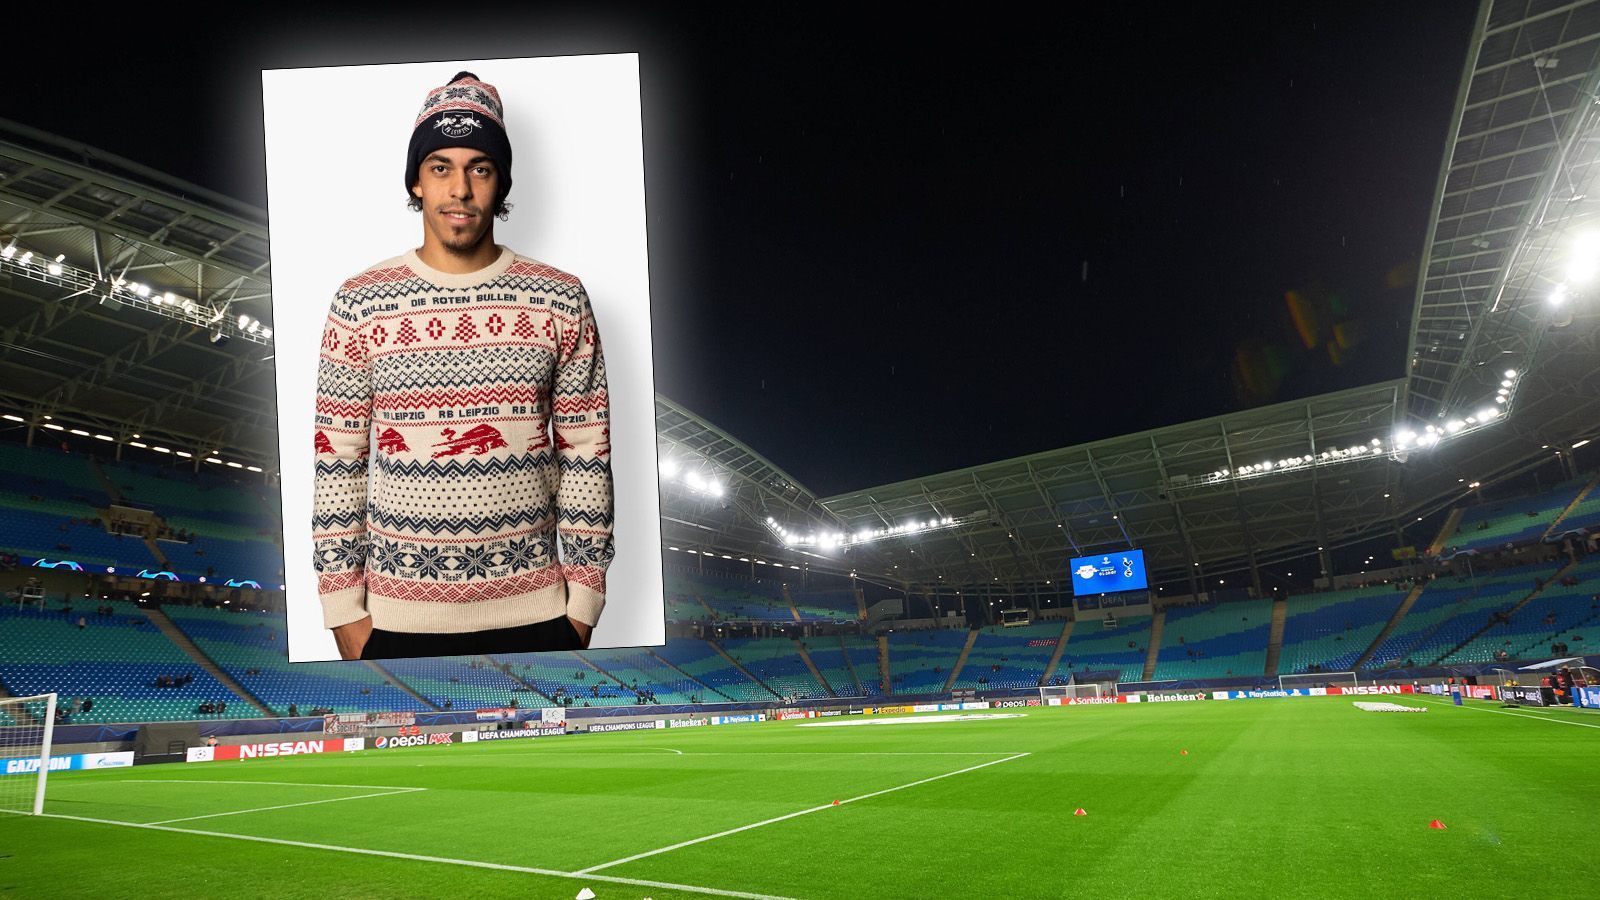 
                <strong>RB Leipzig</strong><br>
                RB Leipzig schließt sich dem Trend an, kein allzu gewagtes Design für den Christmas Sweater zu wählen. Für den leichten Touch von Pixel-Art im Pulli lassen wir es aber mal als "ugly" durchgehen.
              